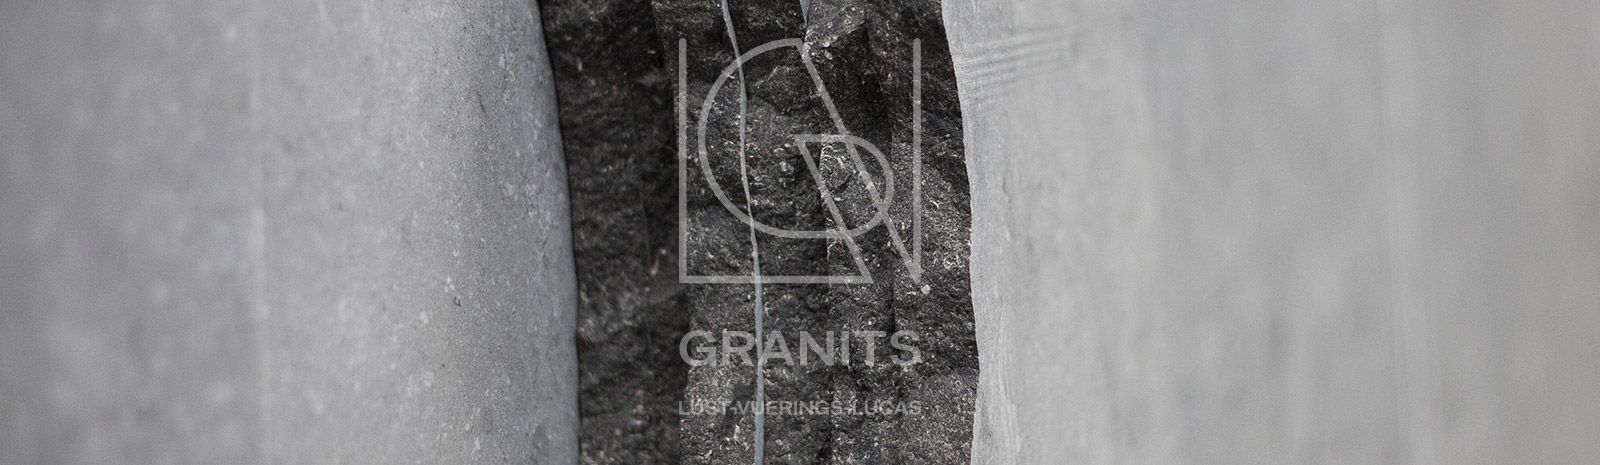 Granits Lust-Vuerings-Lucas - Pierre bleue